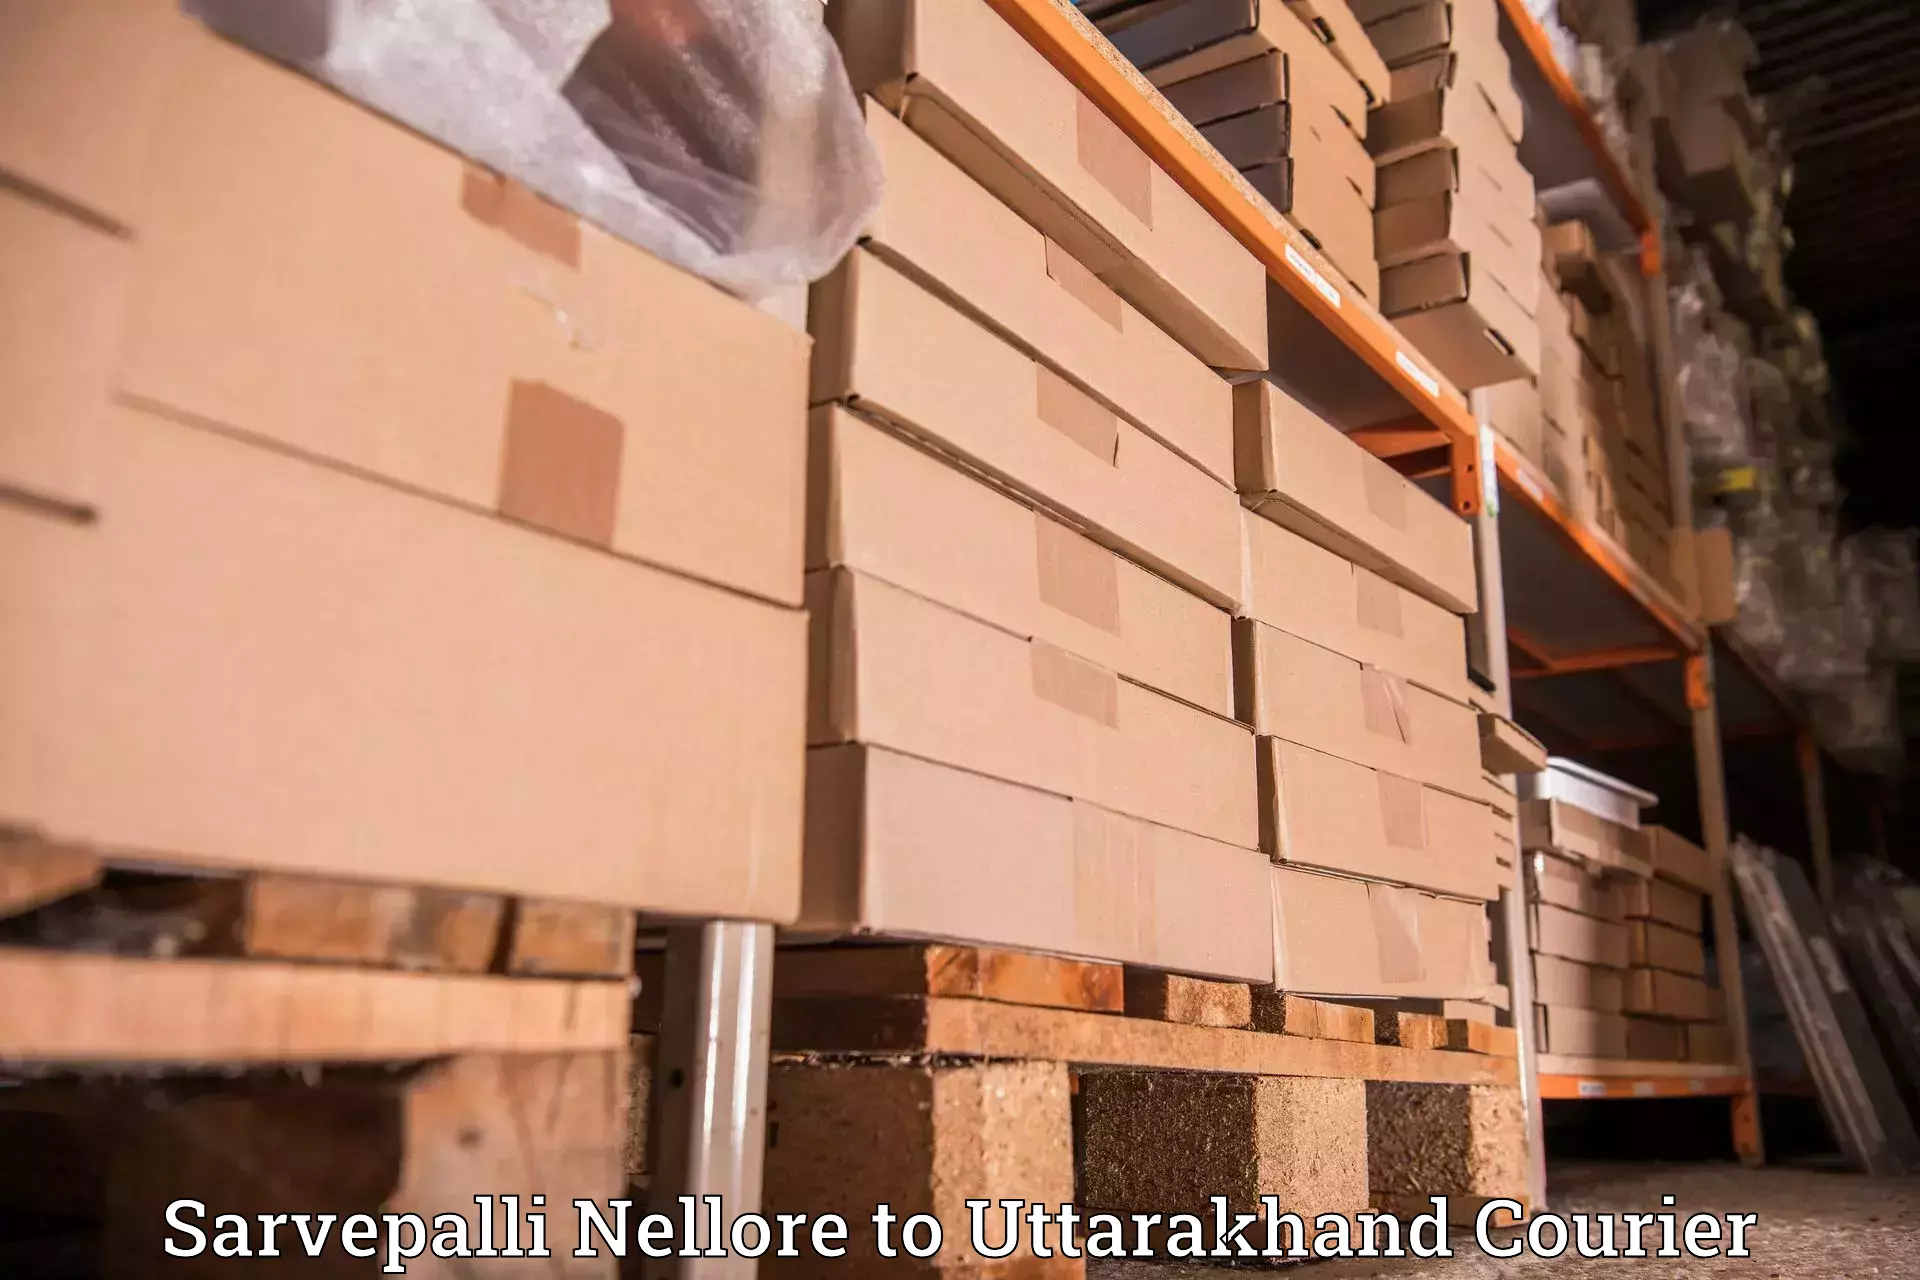 Business delivery service Sarvepalli Nellore to Chamoli